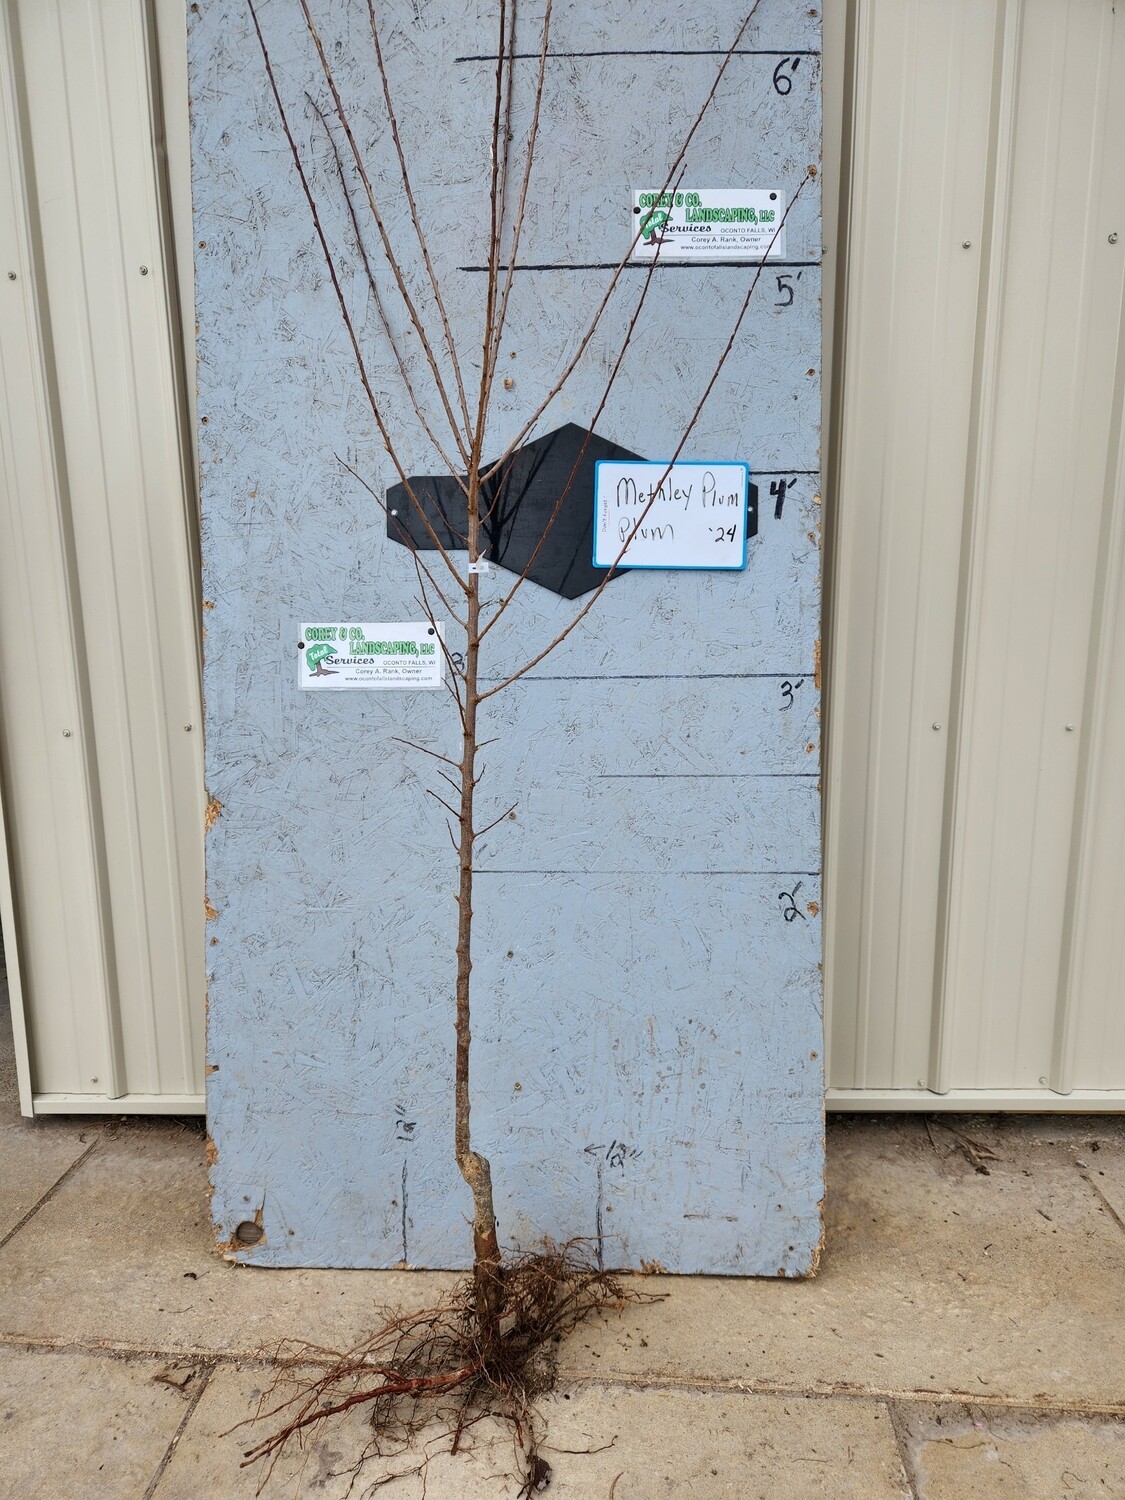 Methley Plum Tree - 11/16